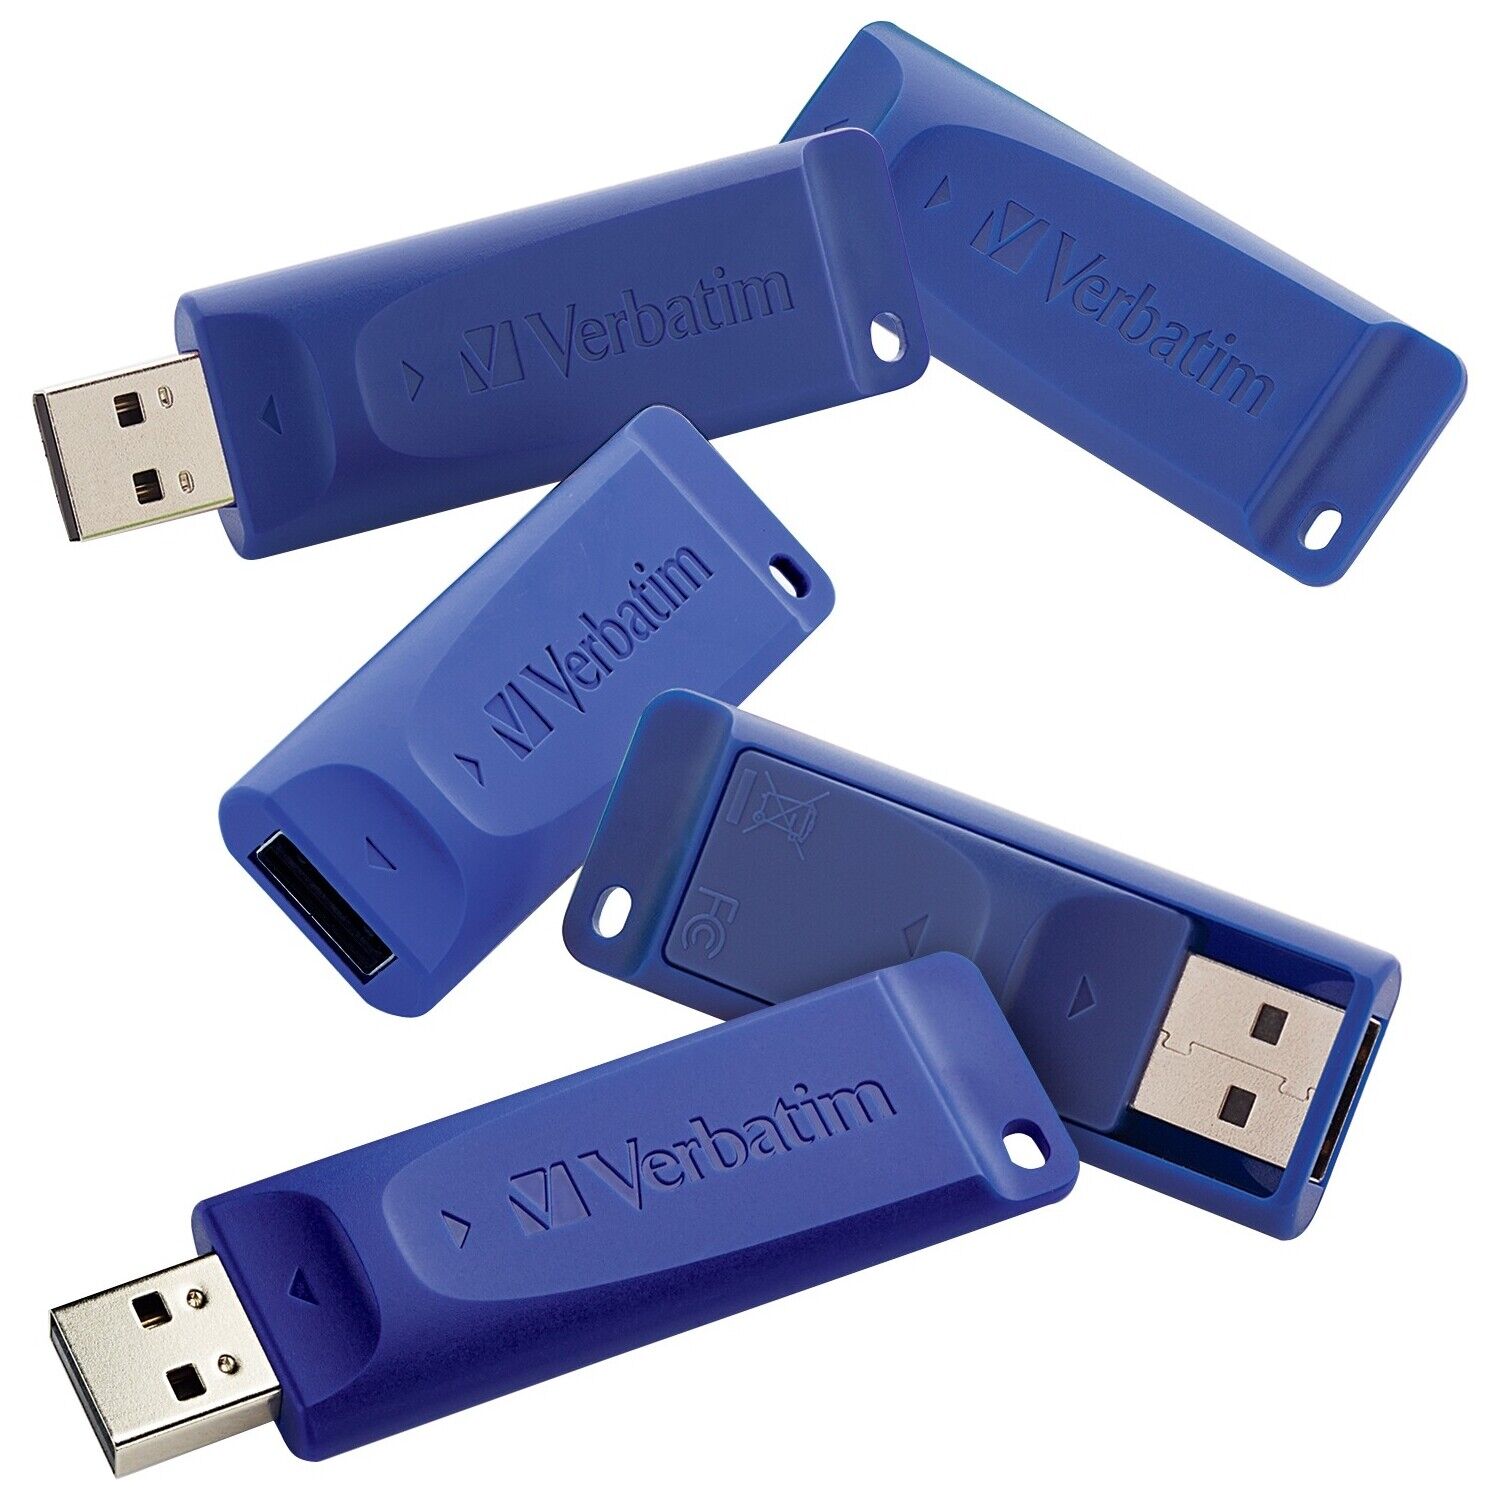 Verbatim 16GB USB Flash Drive - 5pk - Blue (99810_3)